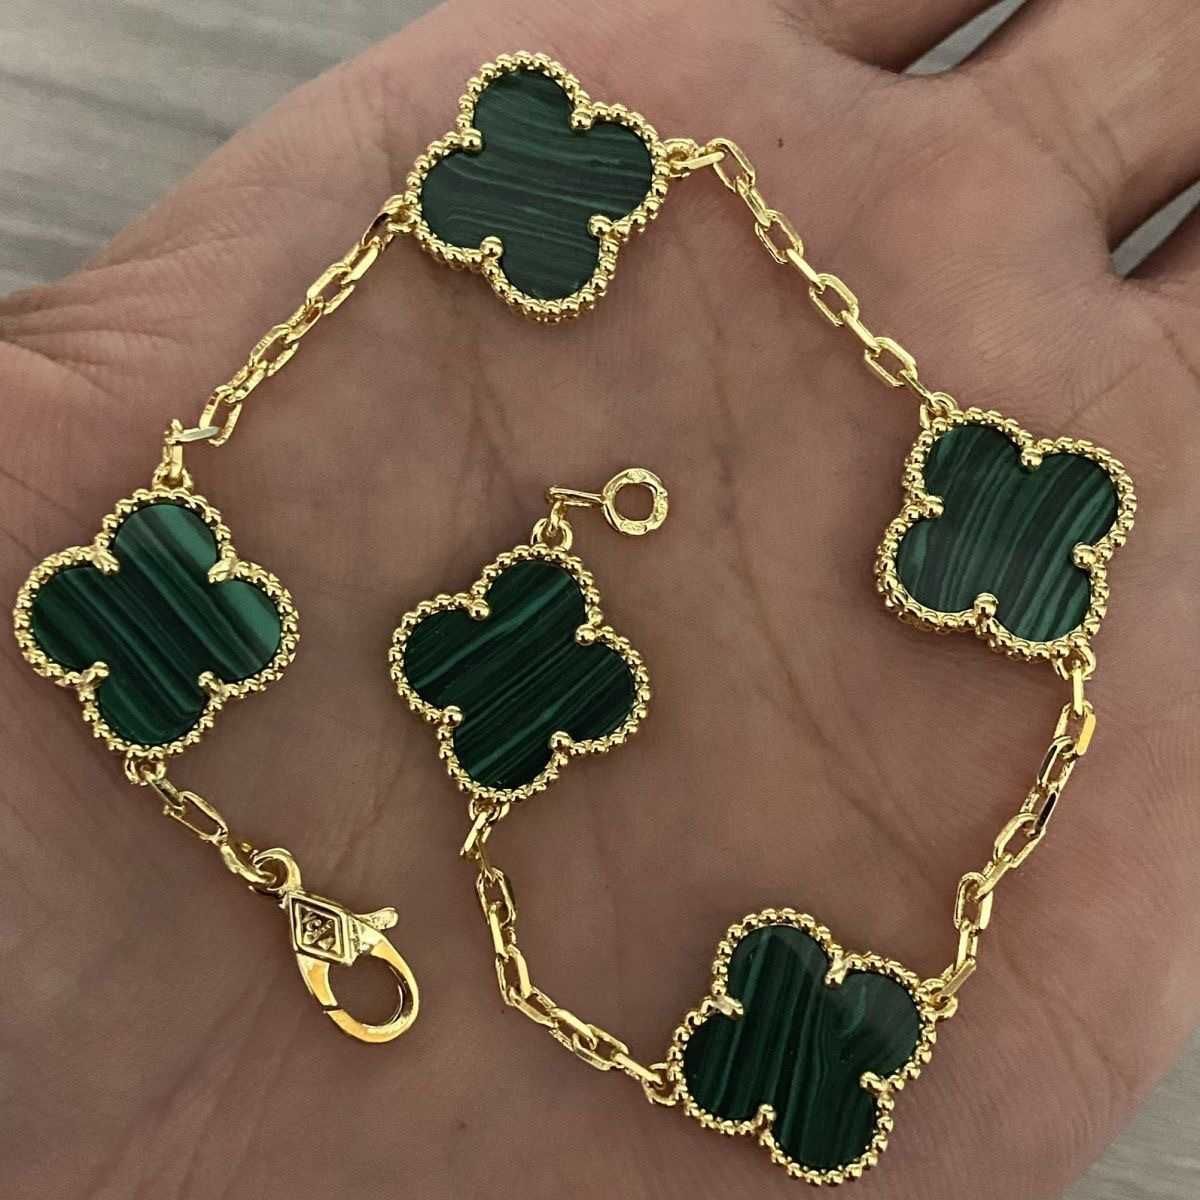 Vert doré (bracelet cinq fleurs)